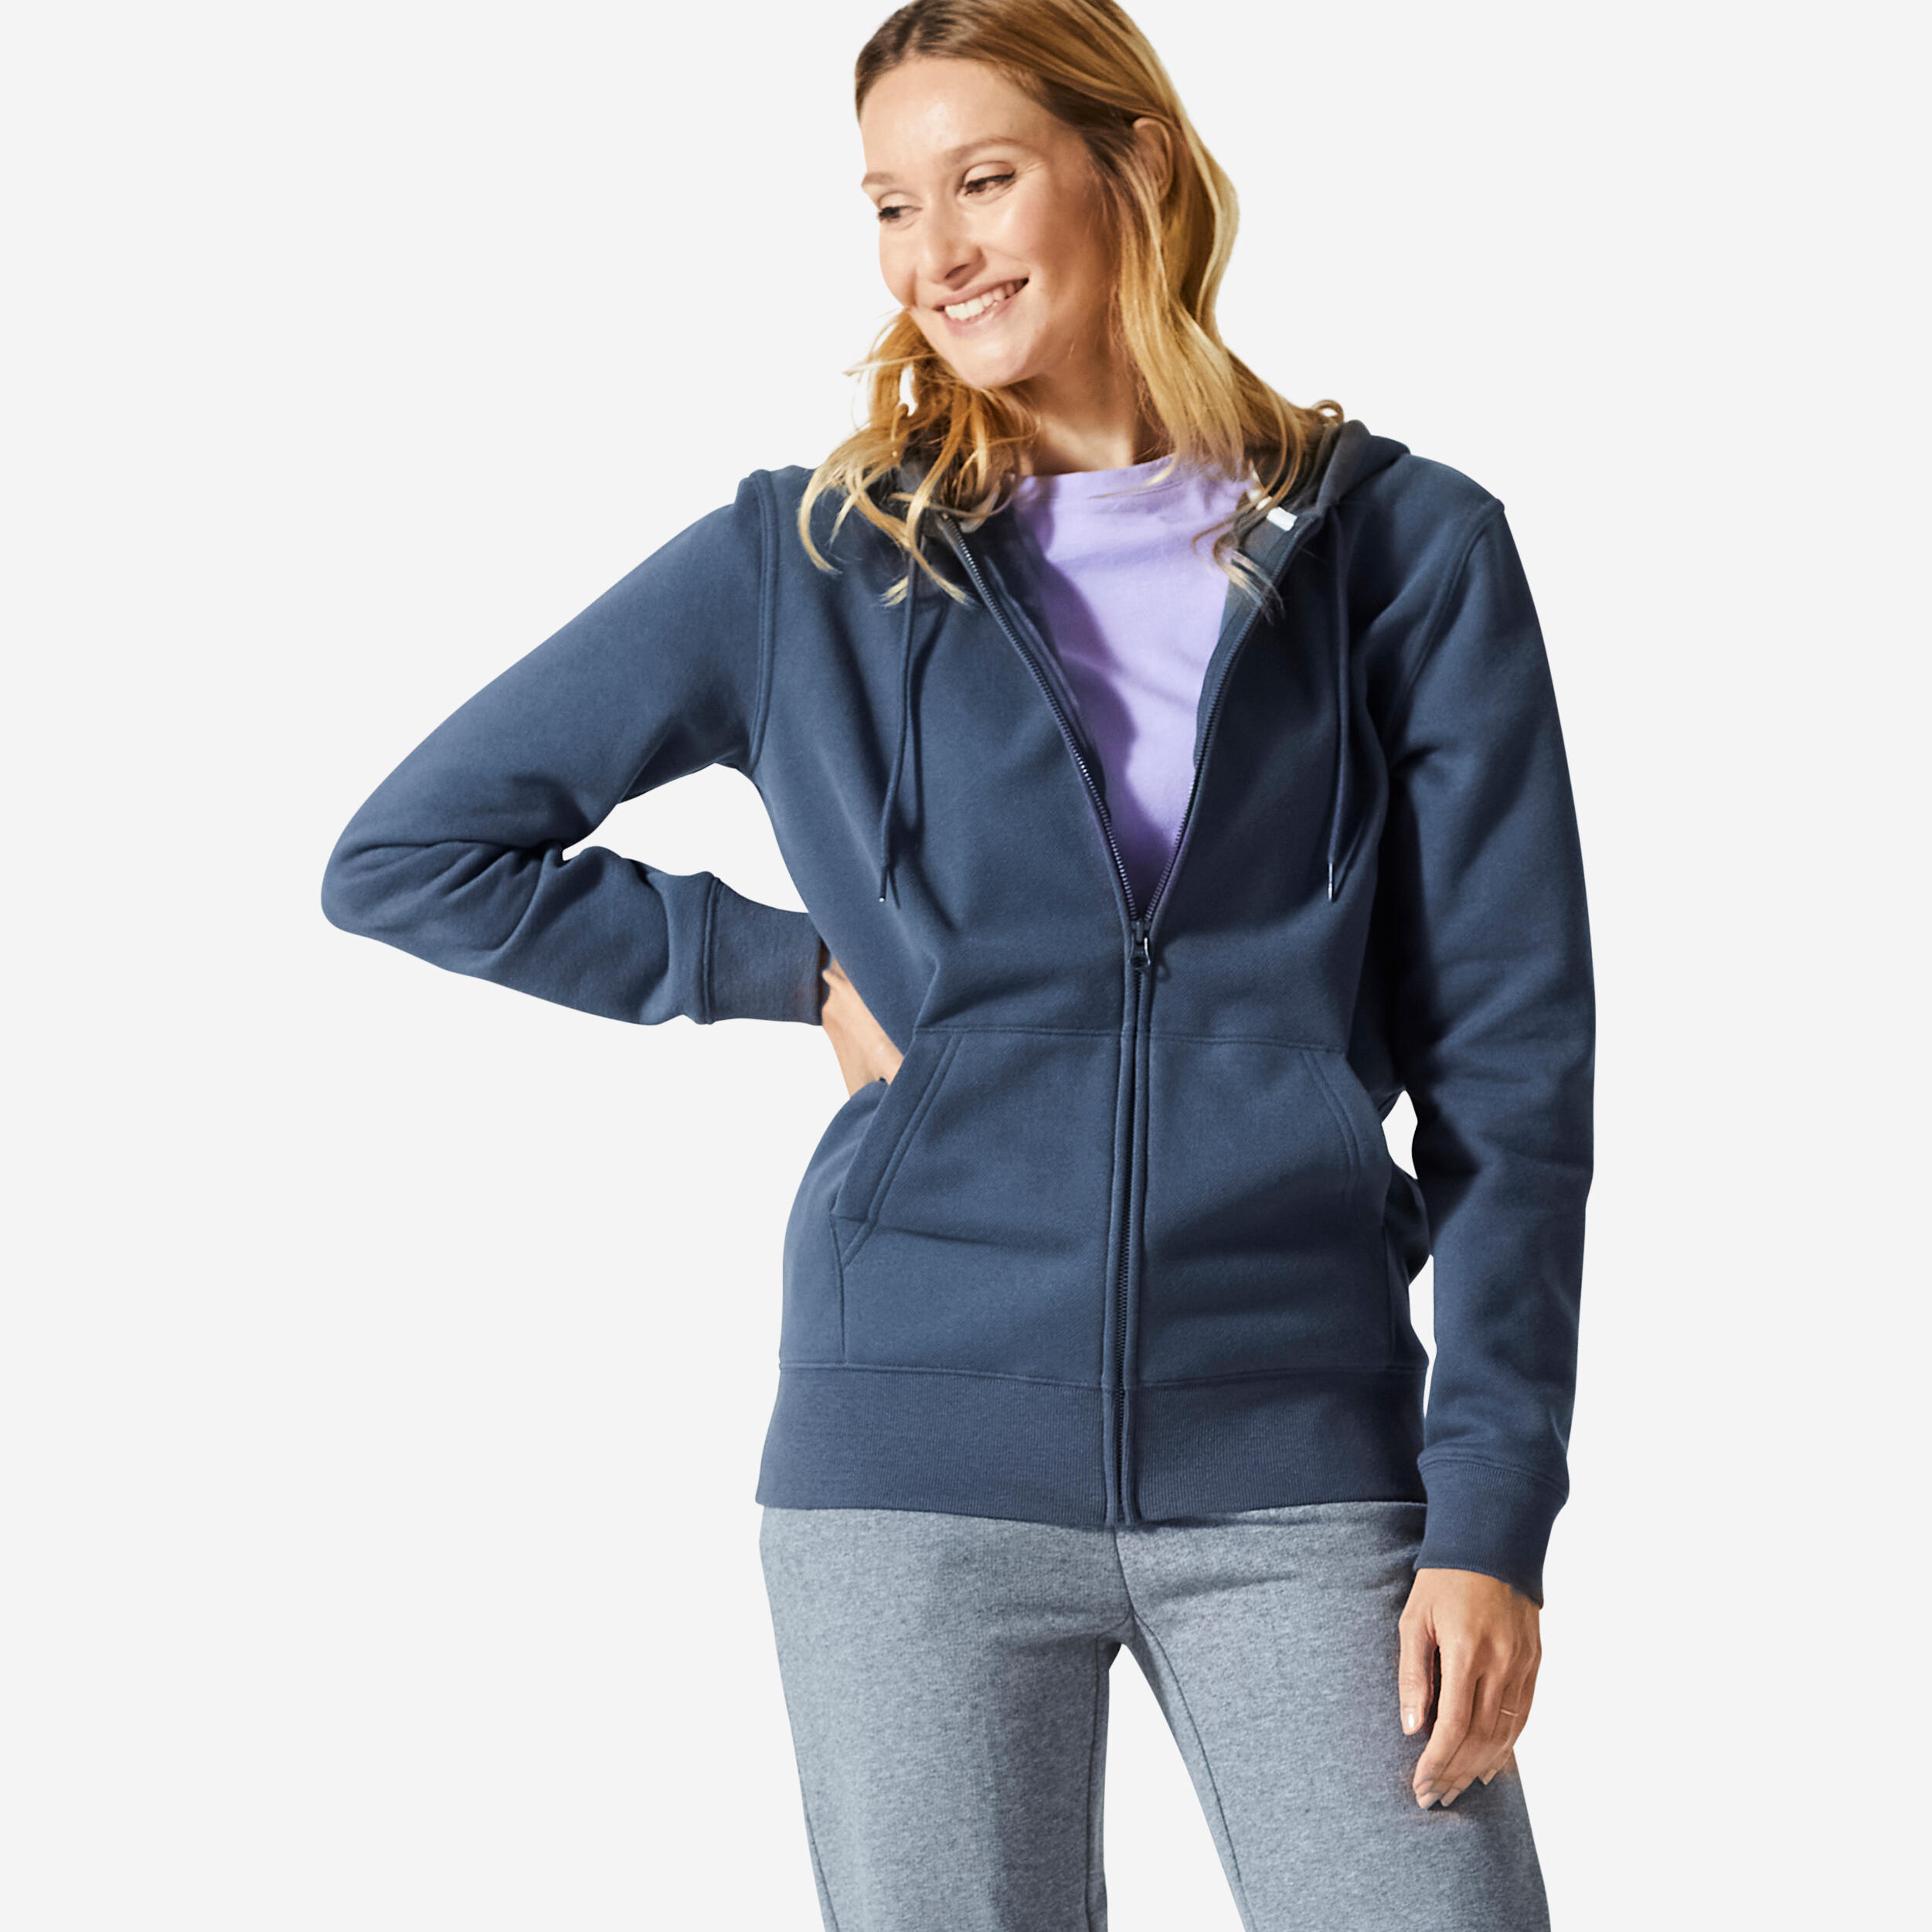 Women's Zip-Up Fitness Sweatshirt 500 Essentials - Abyss Grey 1/5